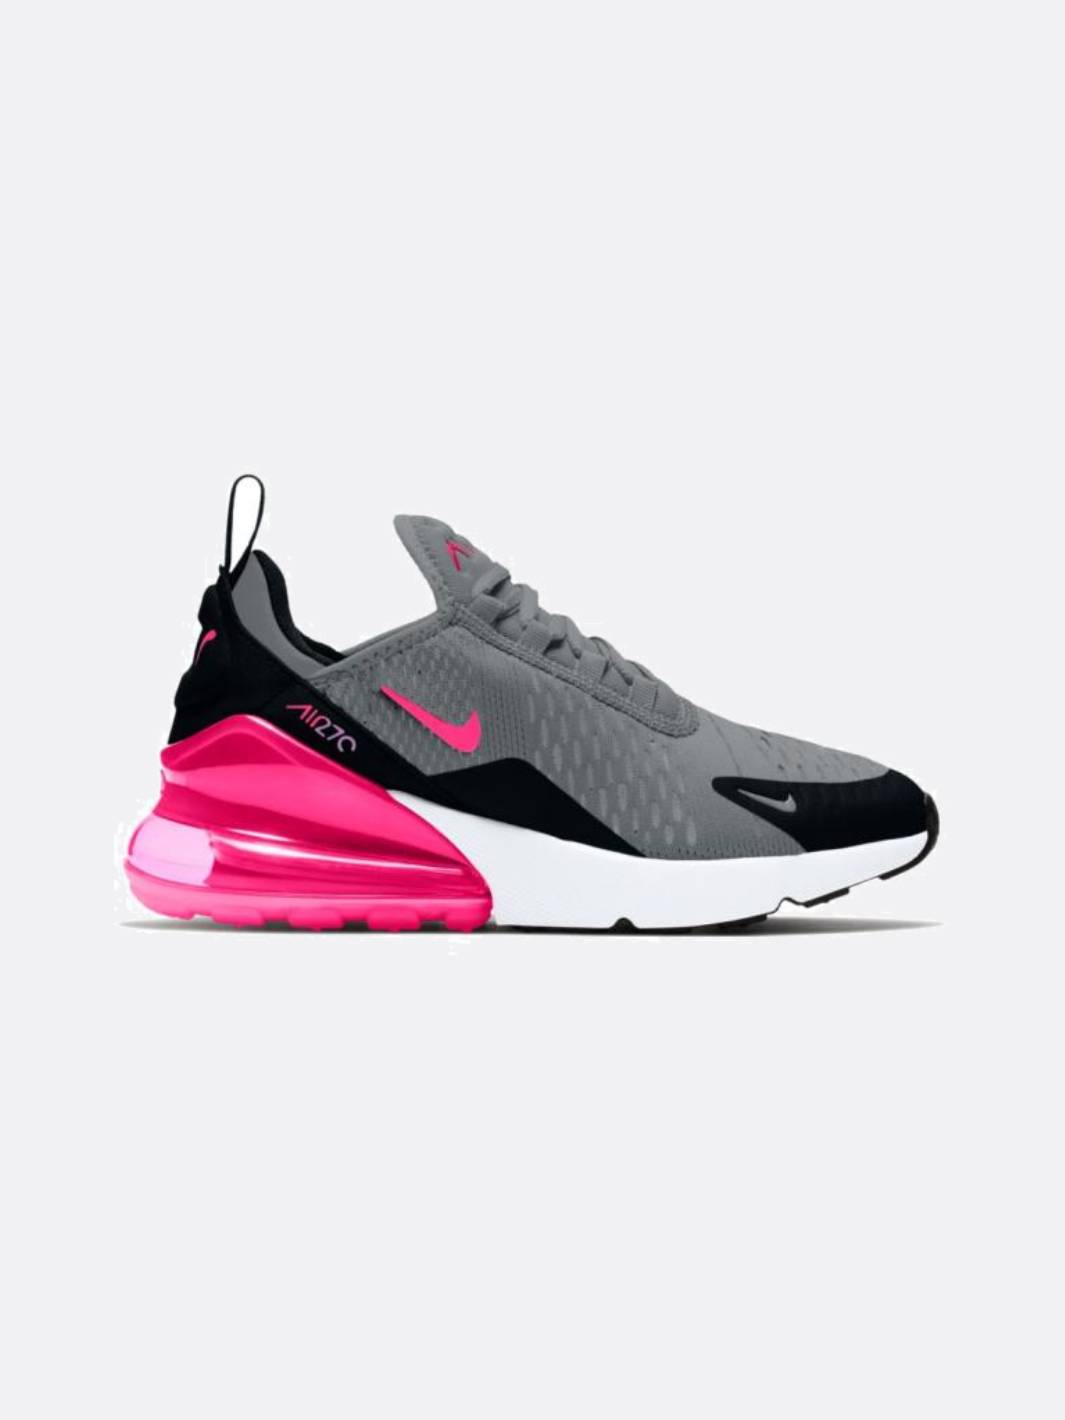 Nike - Boy - GS Air Max 270 - Smoke Grey/Hyper Pink/Black/White - Nohble